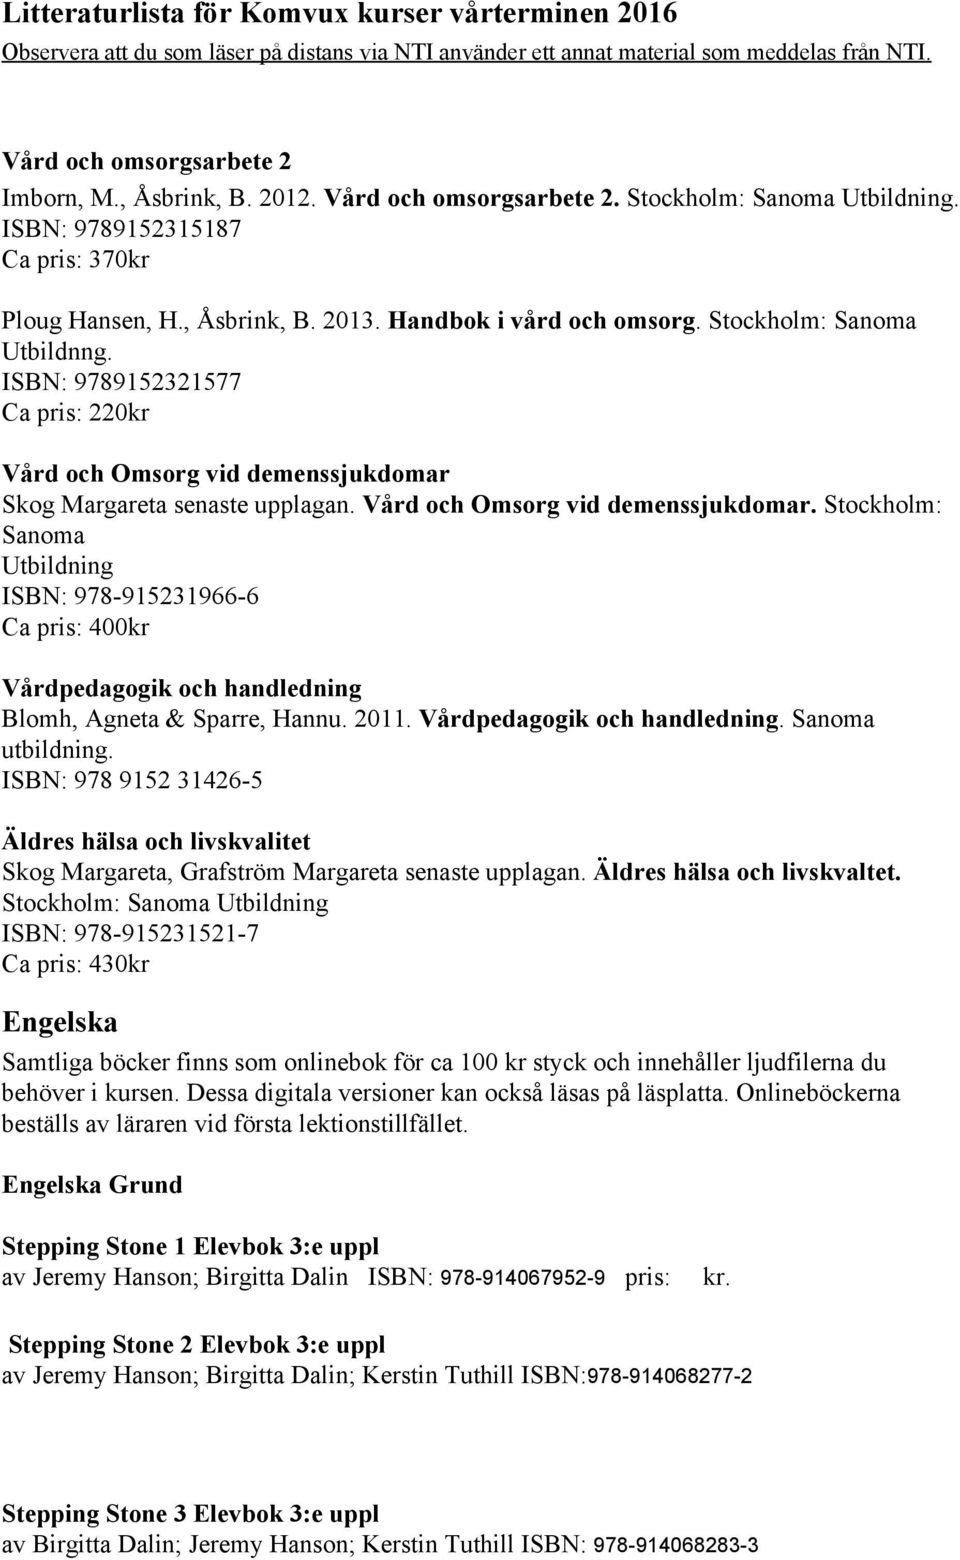 Skog Margareta senaste upplagan. Vård och Omsorg vid demenssjukdomar. Stockholm: Sanoma Utbildning ISBN: 978 915231966 6 Vårdpedagogik och handledning Blomh, Agneta & Sparre, Hannu. 2011.